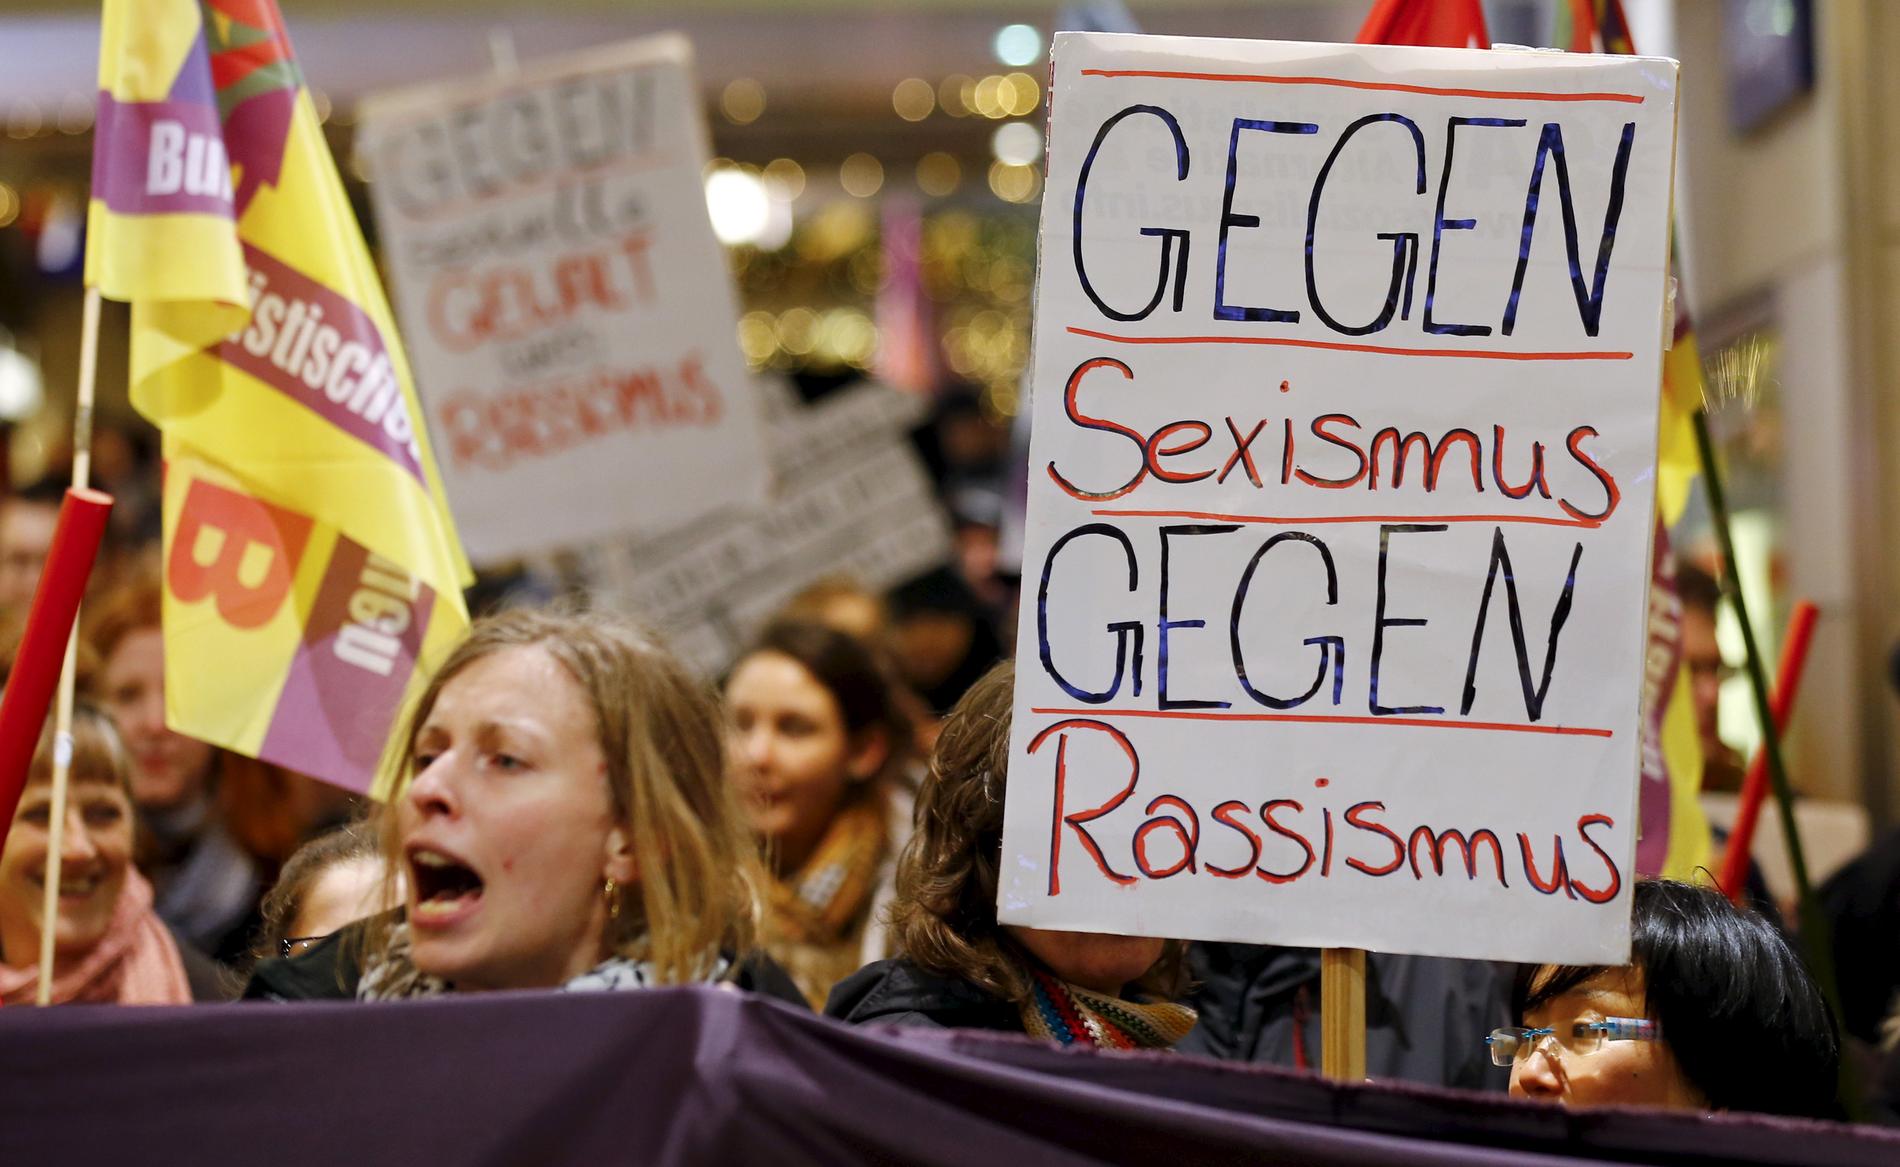 Kvinnor samlades i Köln för att protestera mot sexism och rasism efter larmen om övergrepp på nyårsnatten. ”Mot sexism, mot rasism” står det på plakaten.